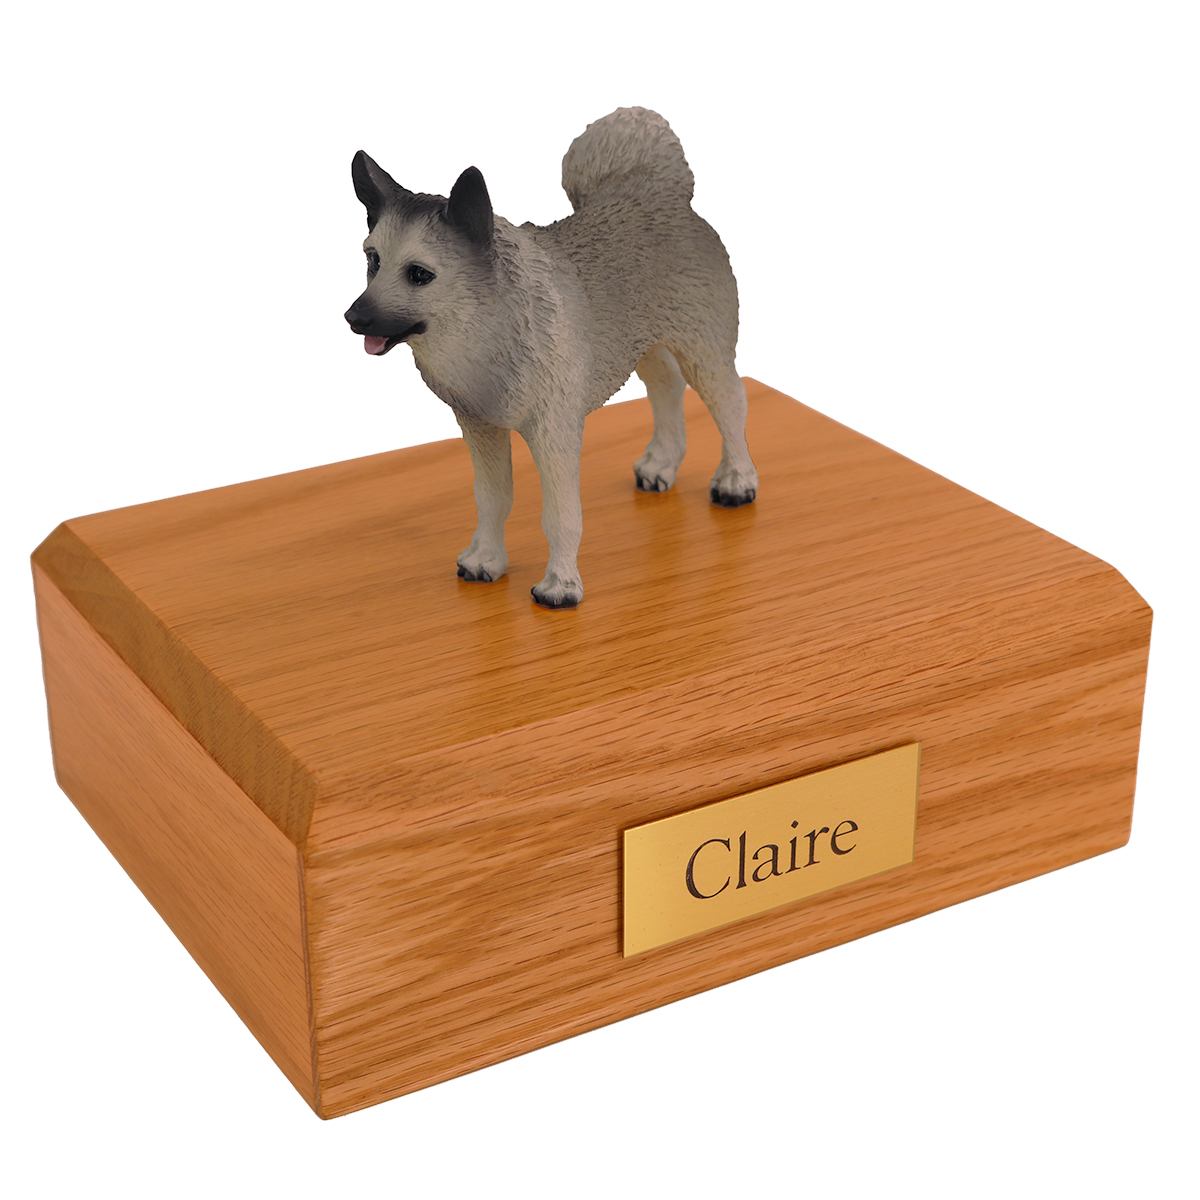 Dog, Norwegian Elkhound - Figurine Urn